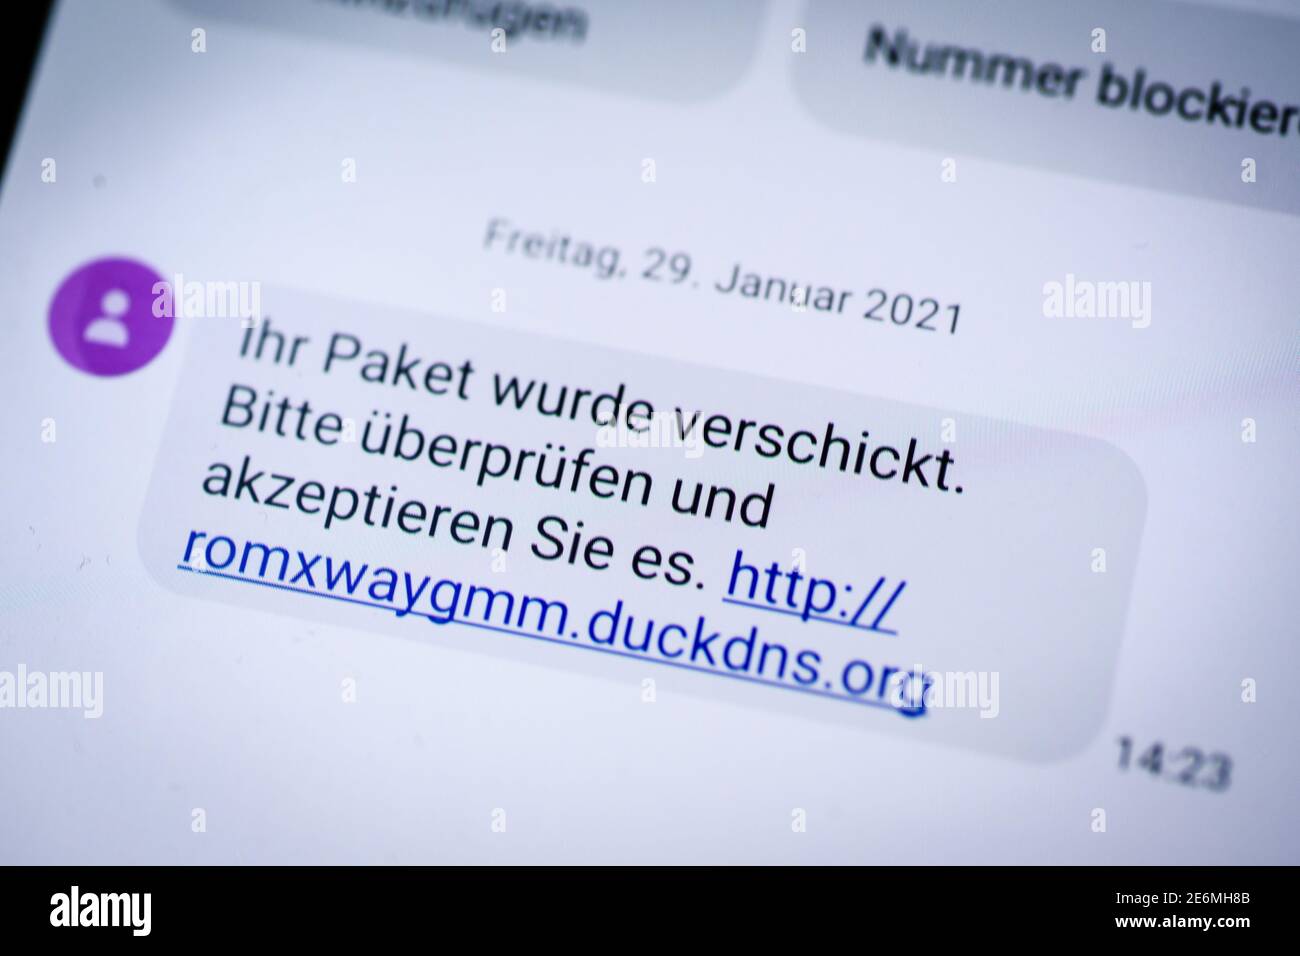 Alemania, Berlín, 29 de enero de 2021: Un SMS con un mensaje potencialmente  peligroso puede ser visto en la pantalla de un smartphone. El SMS falso  circuló por todo el país y